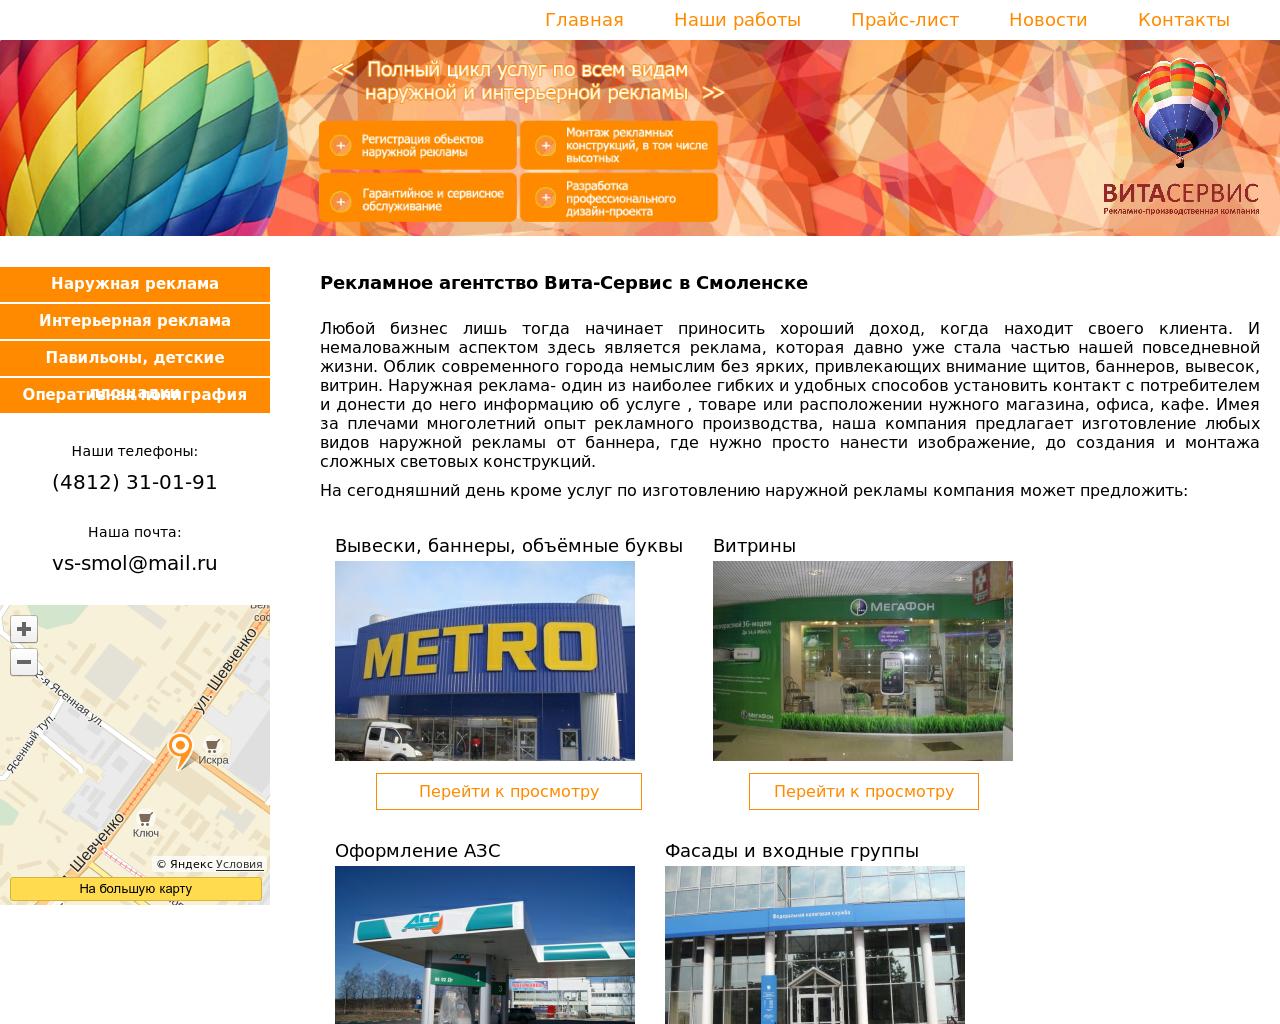 Изображение сайта vs-smol.ru в разрешении 1280x1024